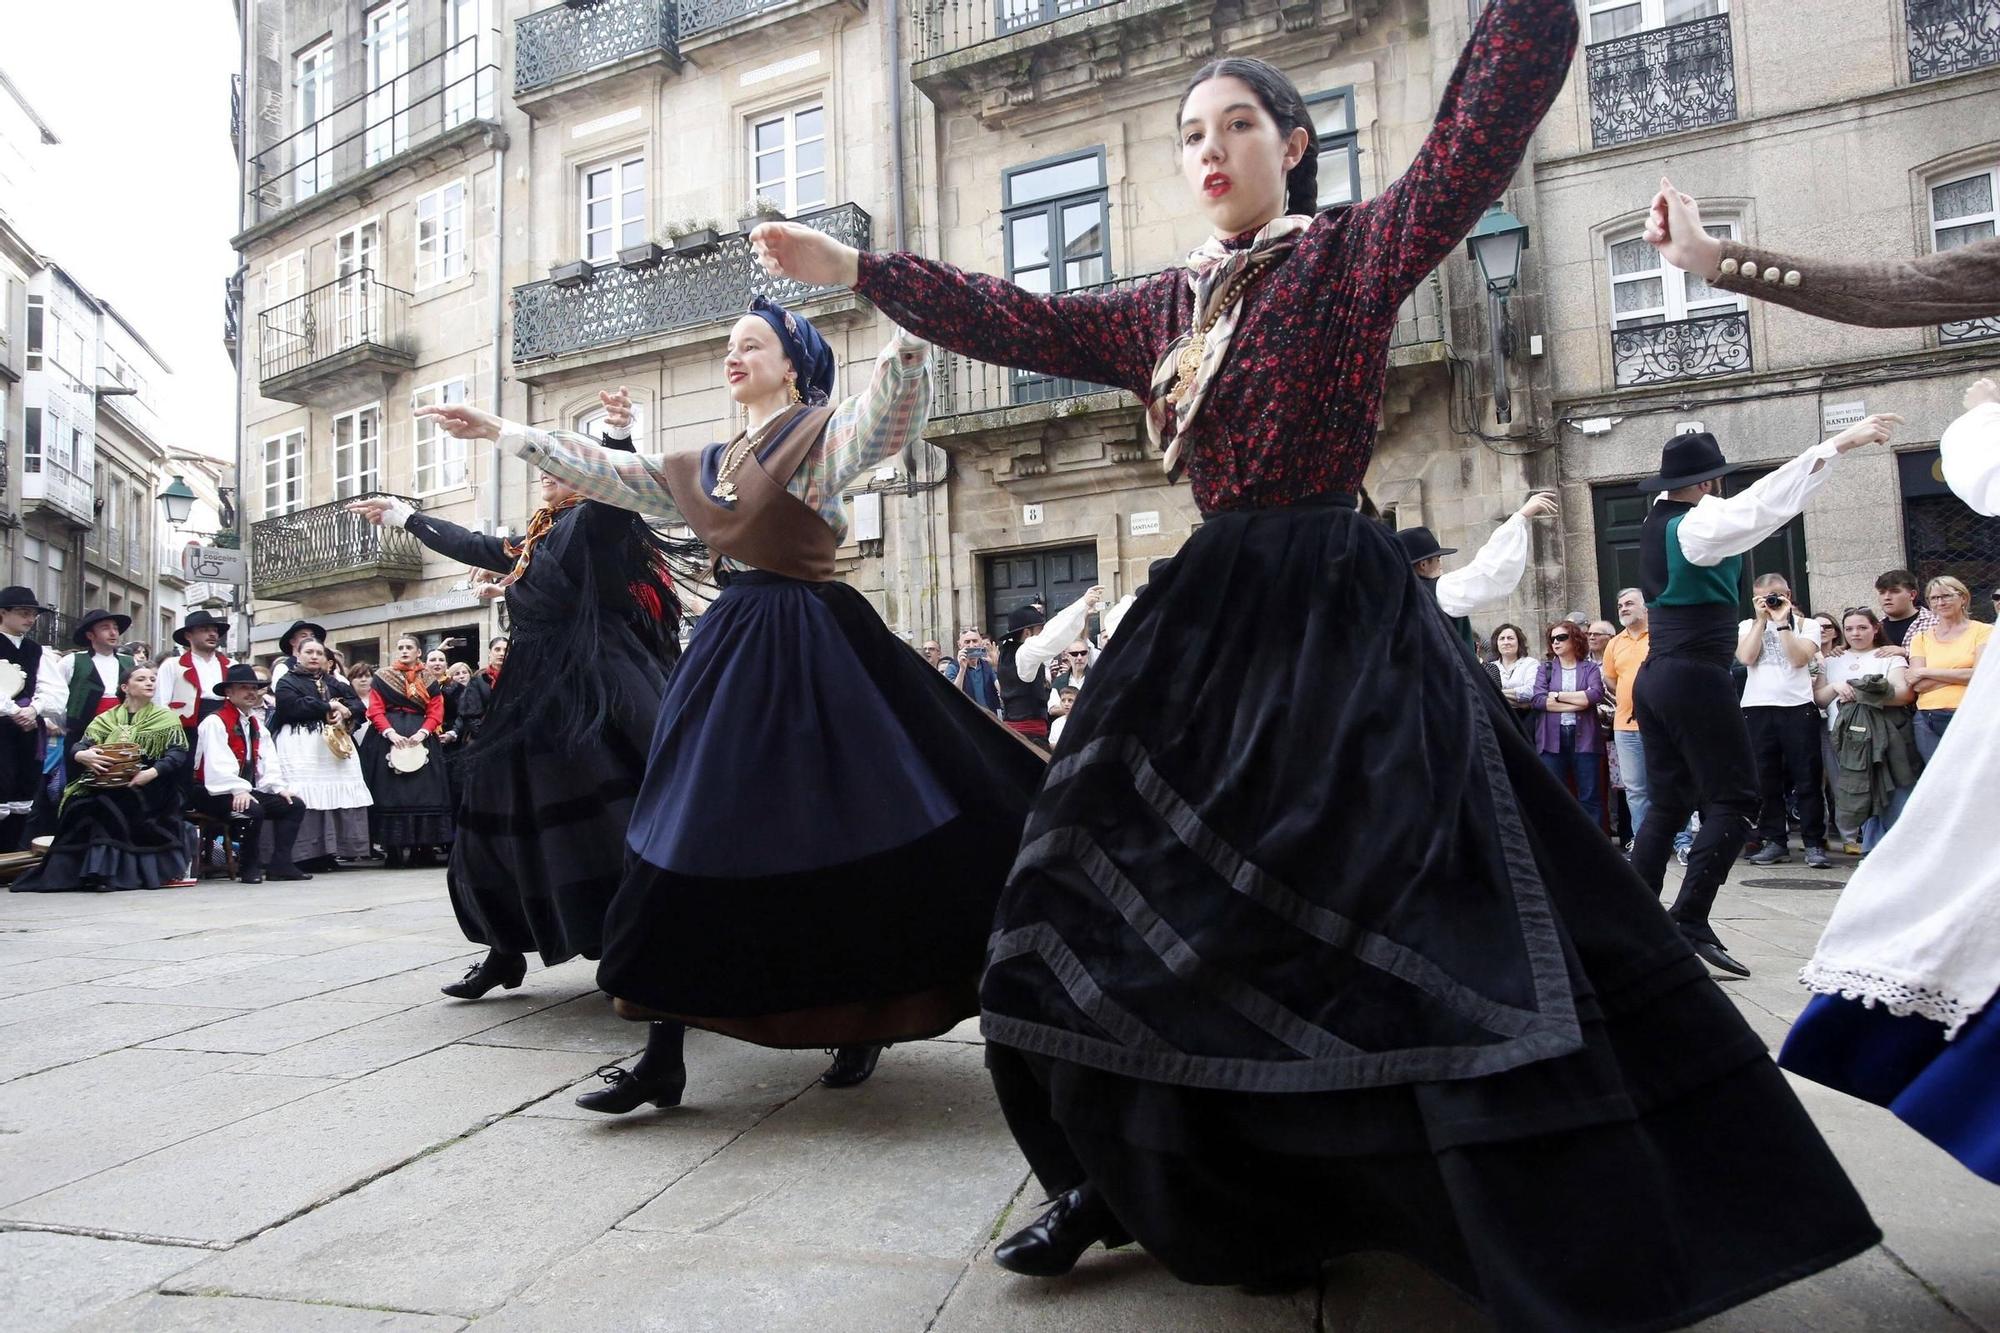 Folk na rúa: actuaciones de las agrupaciones folclóricas